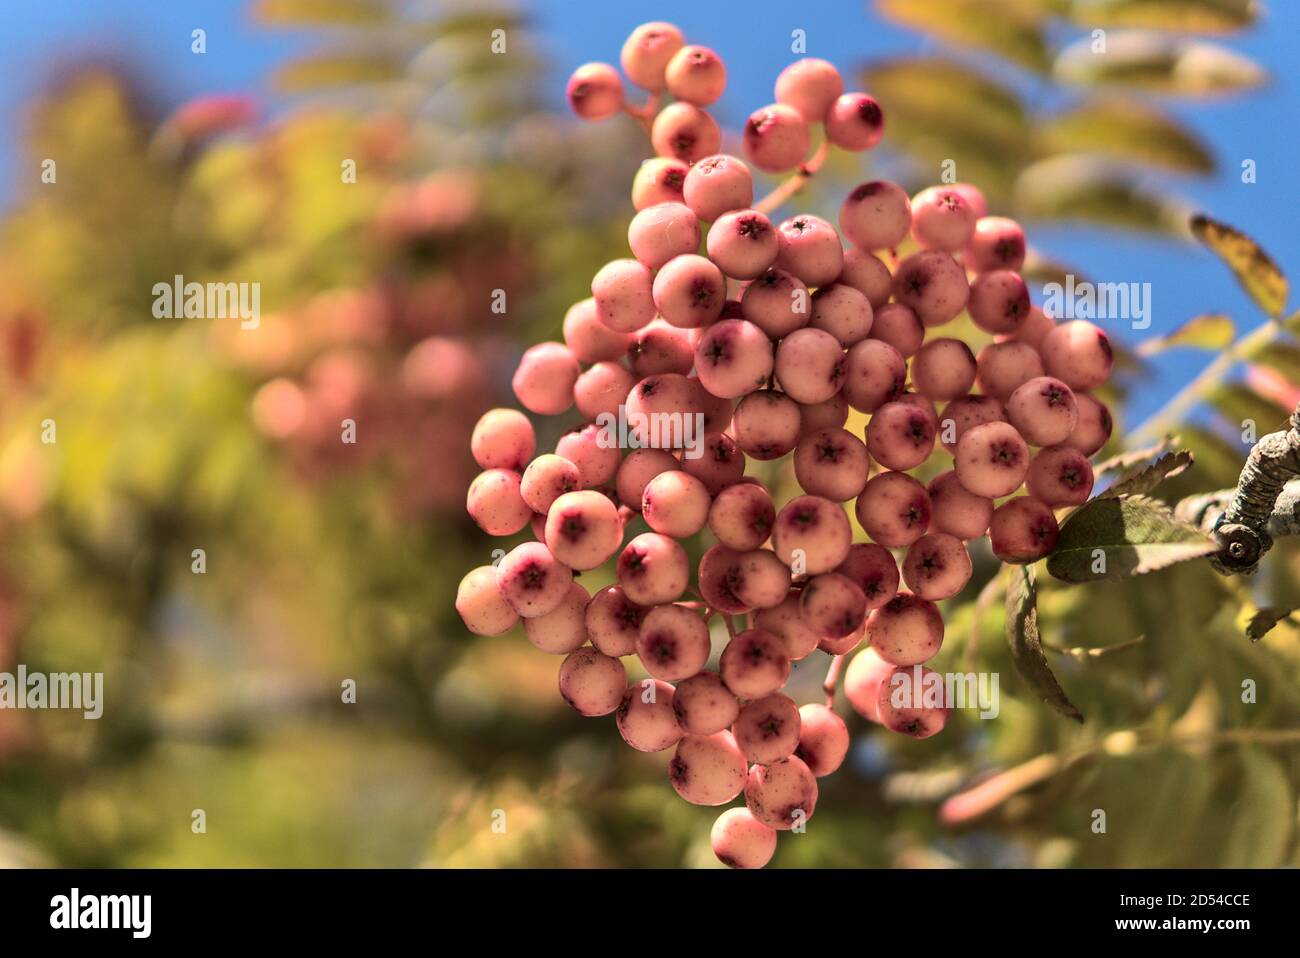 Faites tomber l'arrière-plan dans des couleurs inhabituelles avec l'espace de copie. Belles baies roses automnales de l'arbre Sorbus vilmorinii Rowan à Dundrum, Dublin, Irlande Banque D'Images